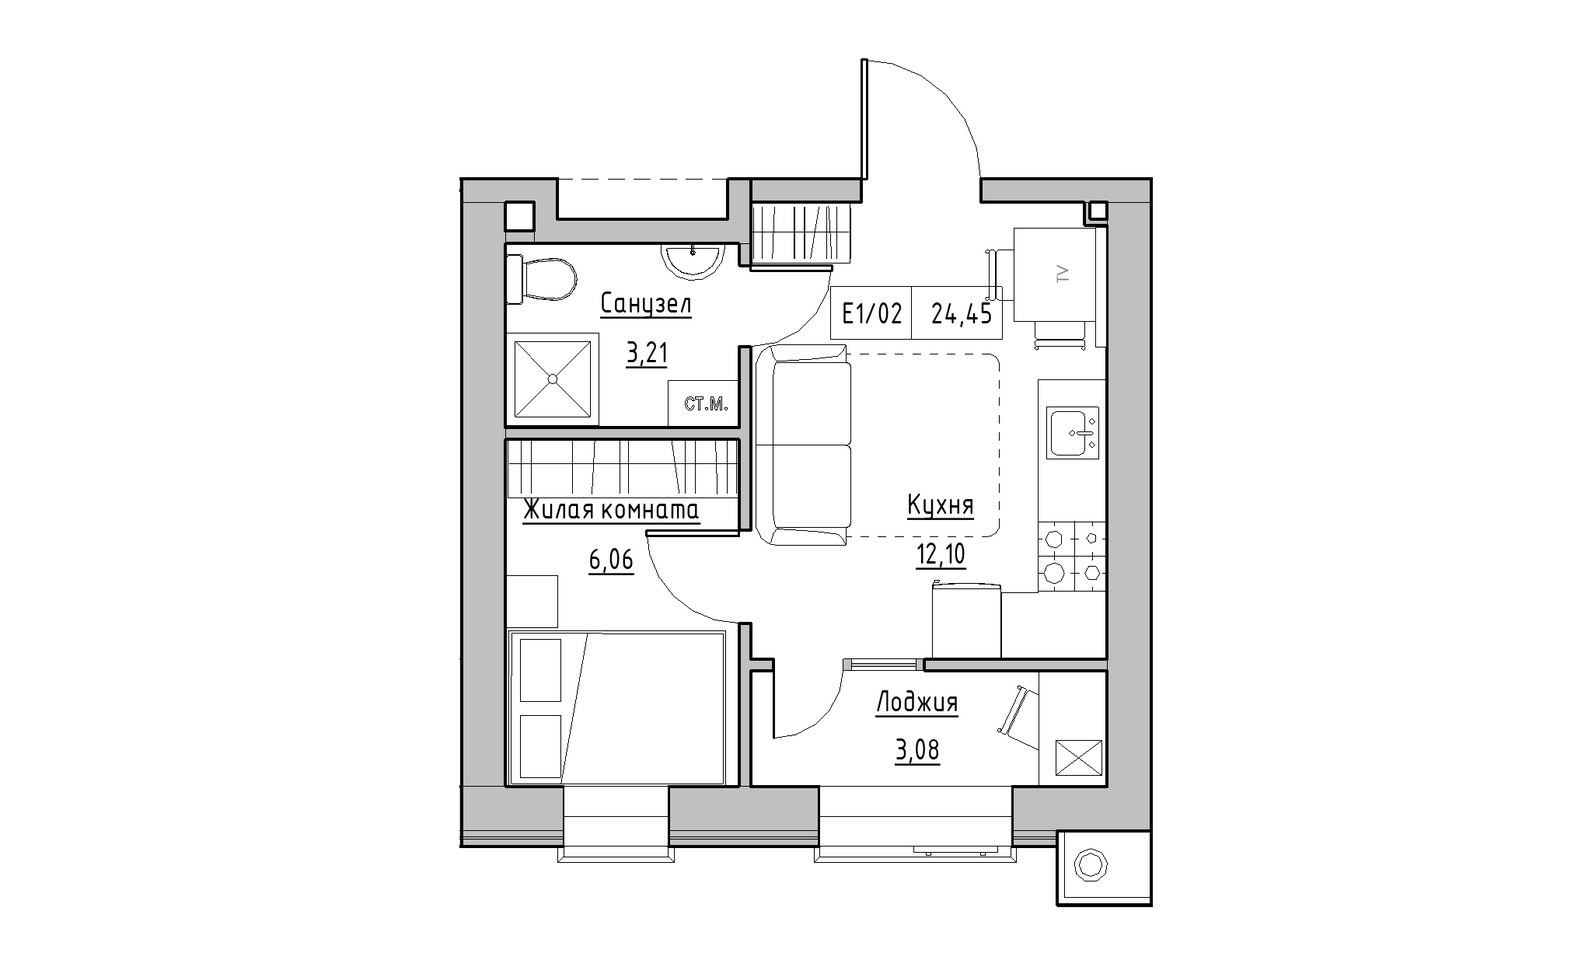 Планування 1-к квартира площею 24.45м2, KS-014-02/0002.